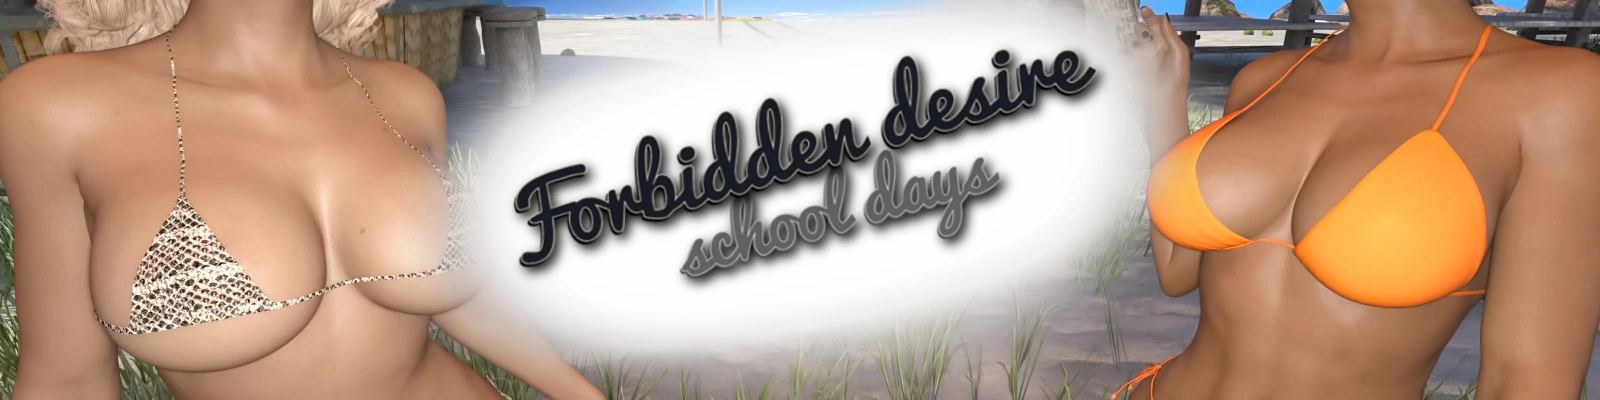 Forbidden Desire – School Days [v0.3] main image